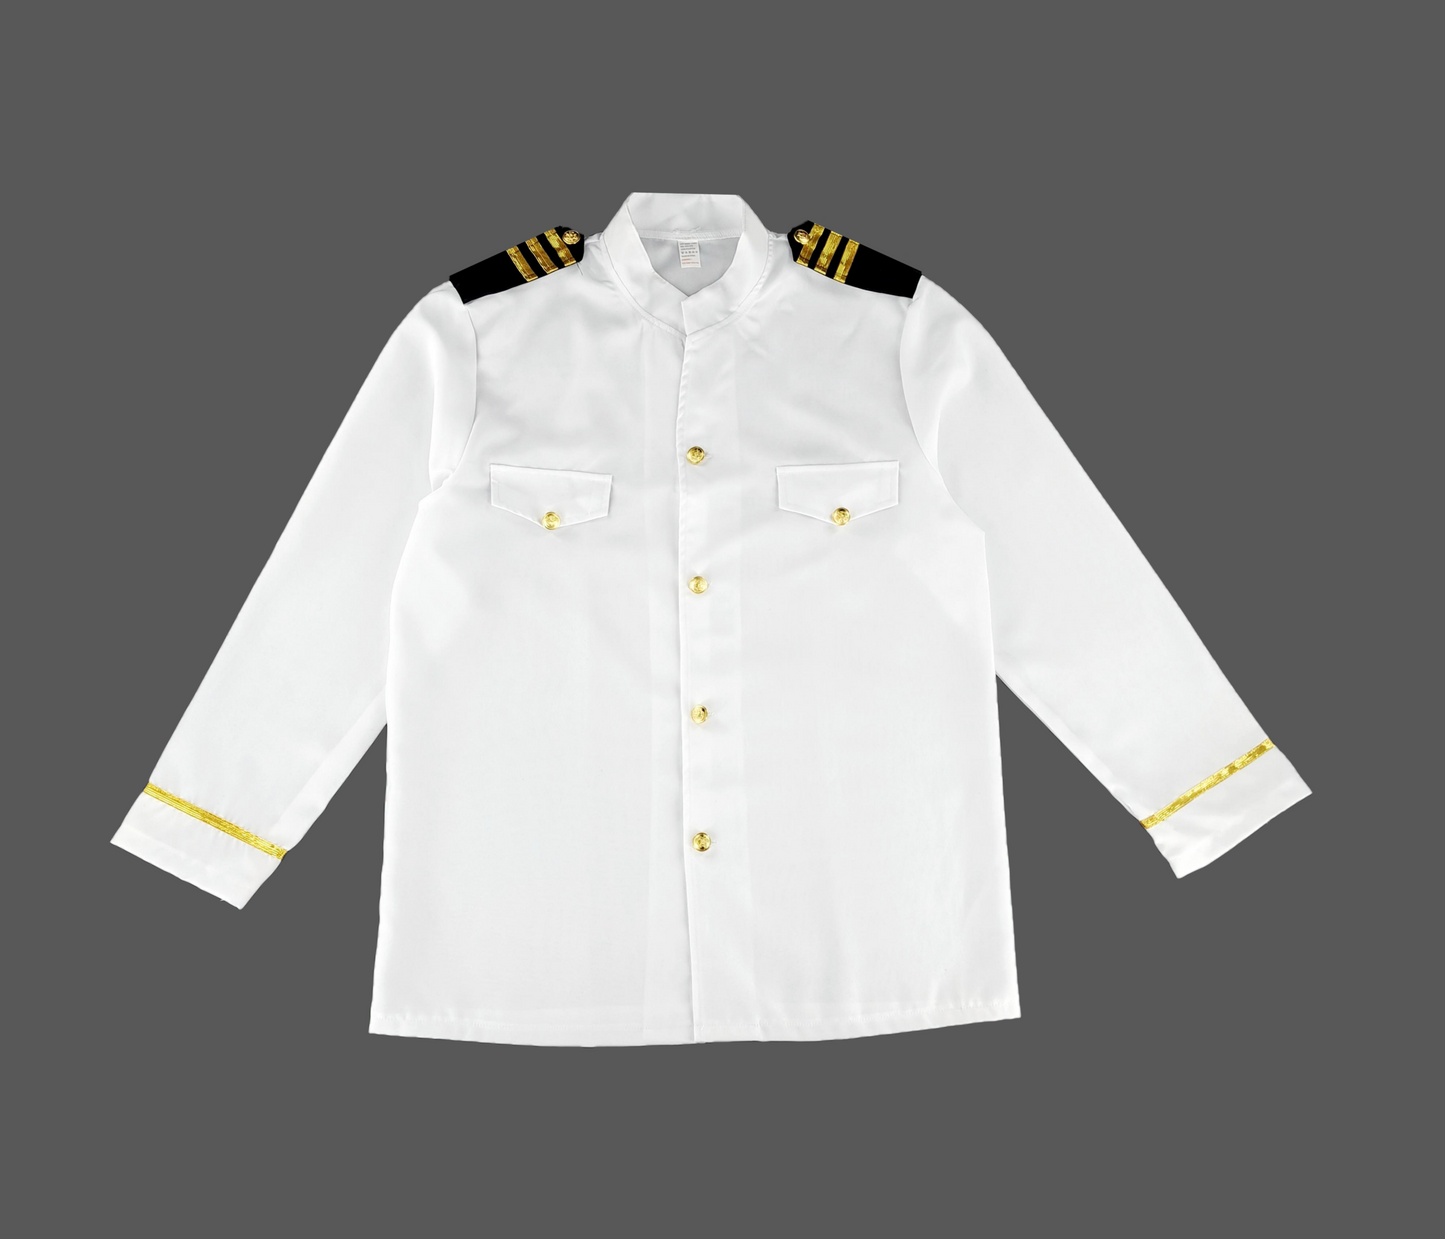 Adult Captain Sailor / Naval Officer Uniform Fancy Dress Costume